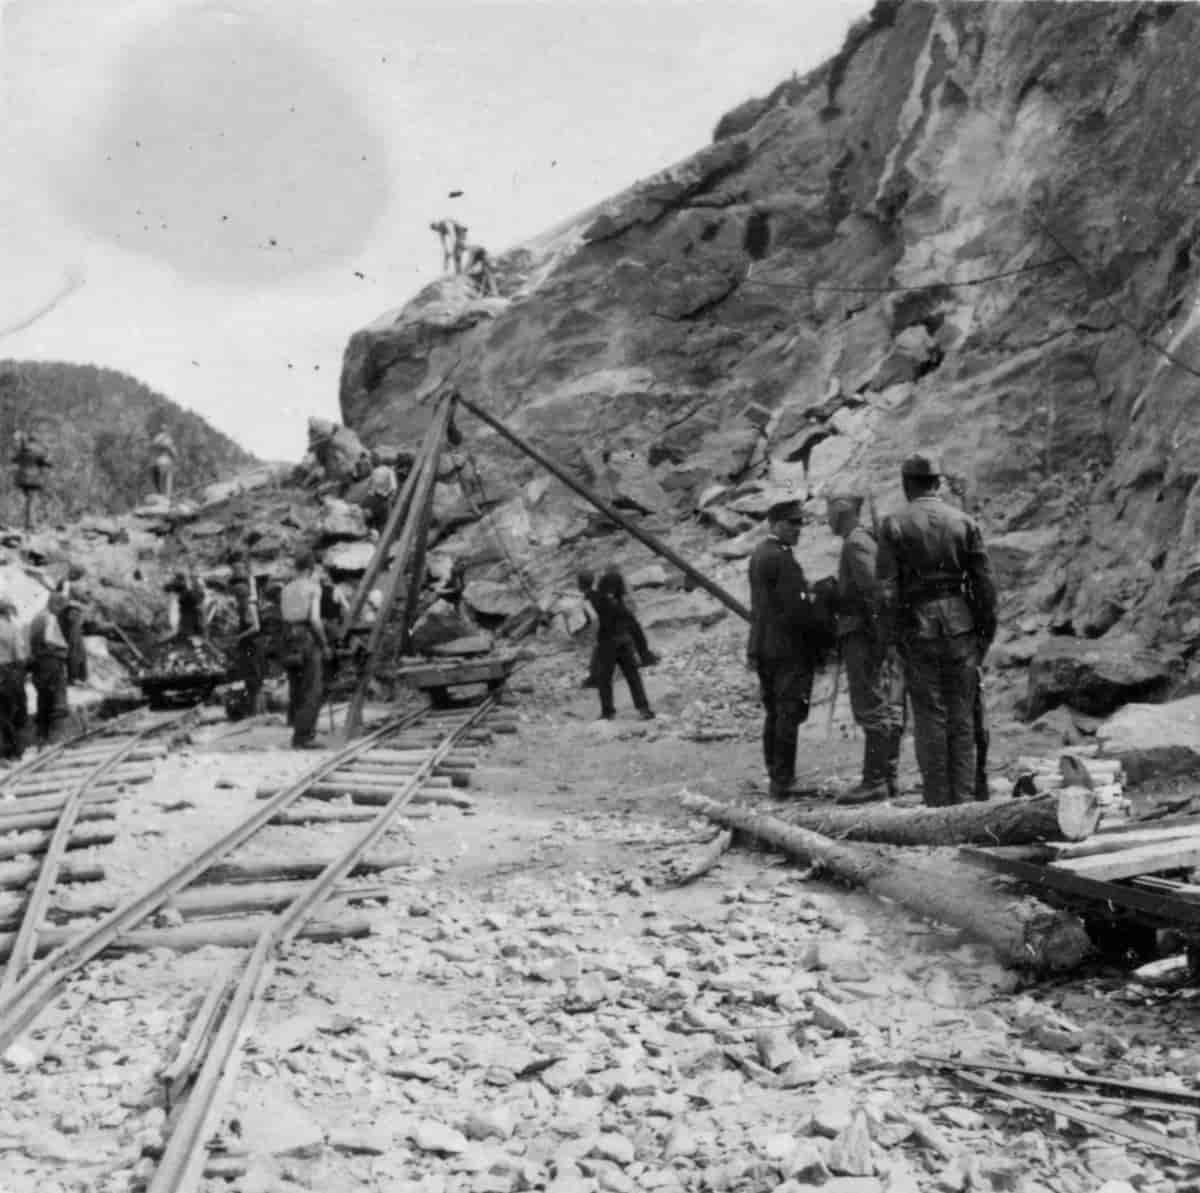 Почему Норвегия тайно выкопала останки тысяч советских солдат